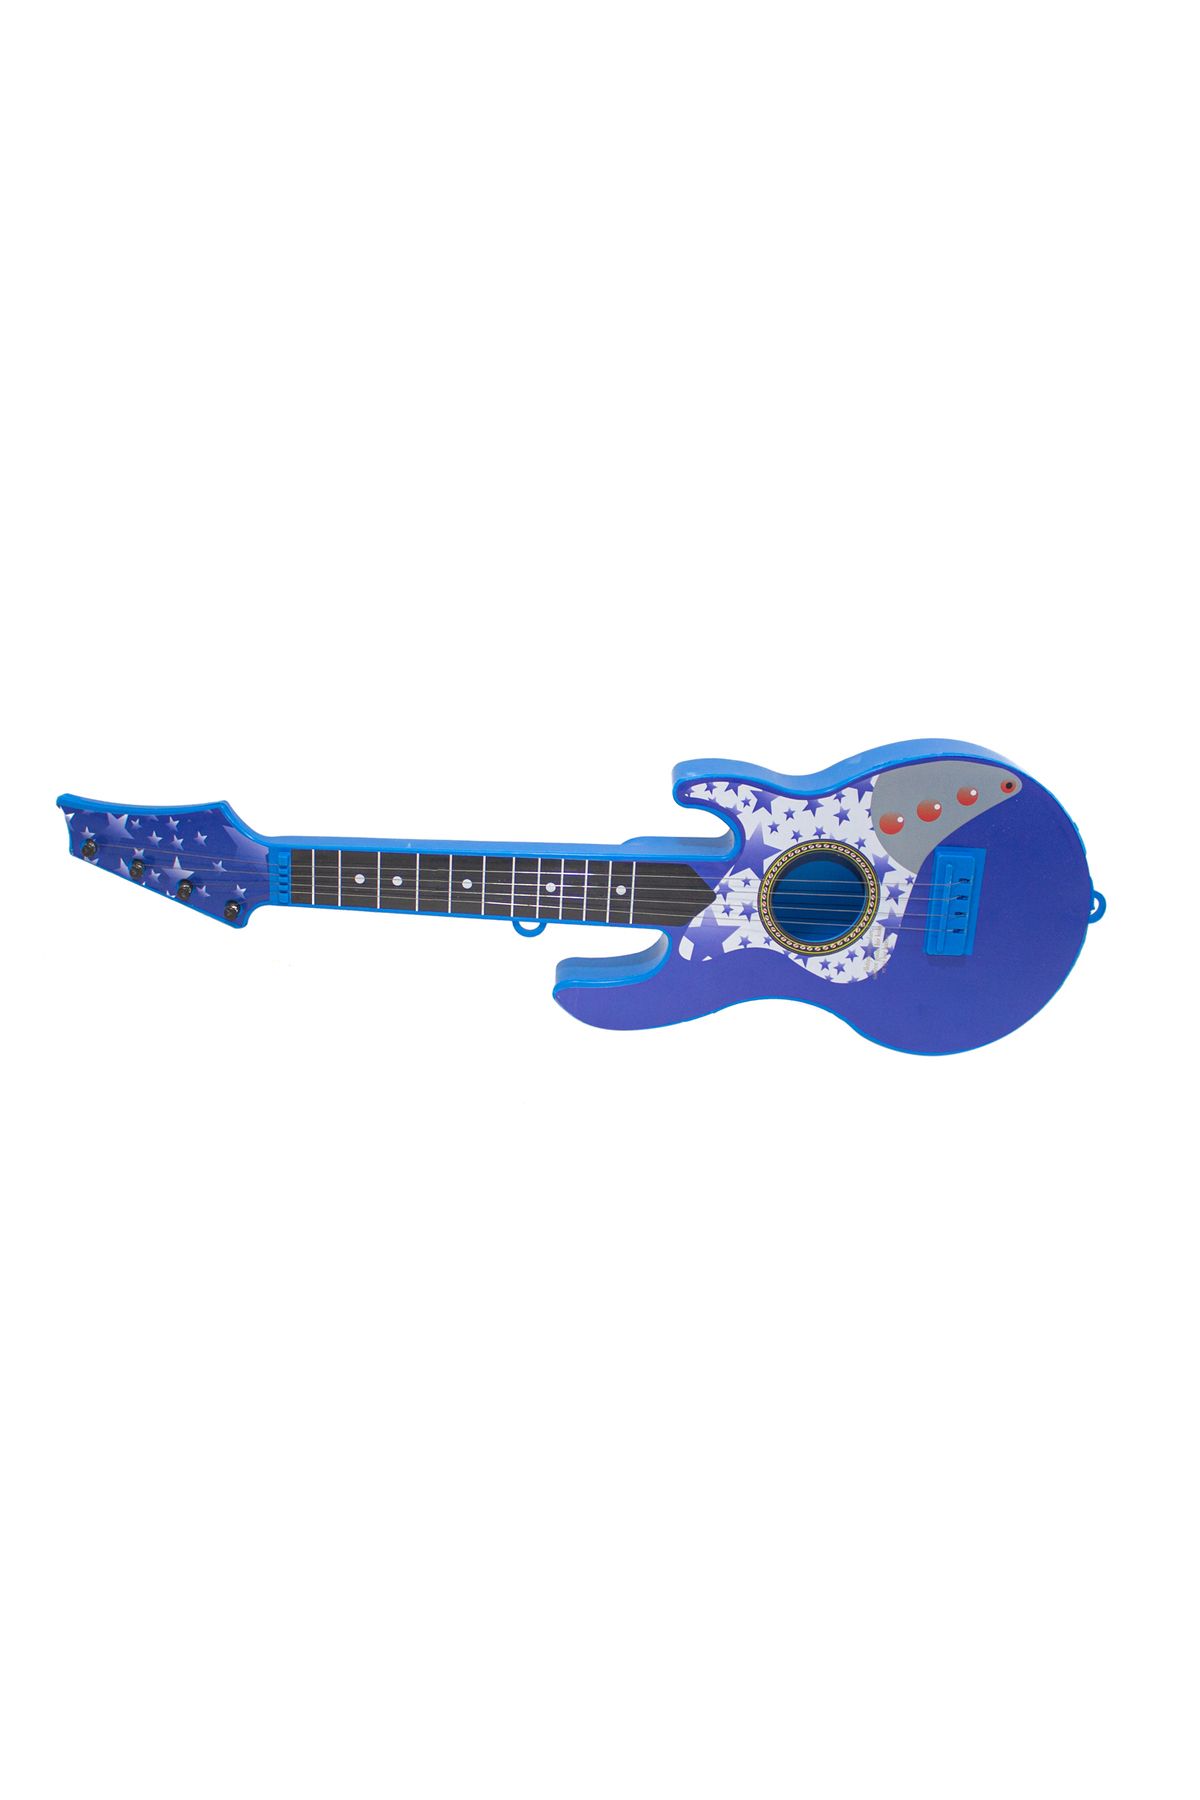 Erzi Oyuncak Rock Gitar Metal Telli 45 Cm Mavi